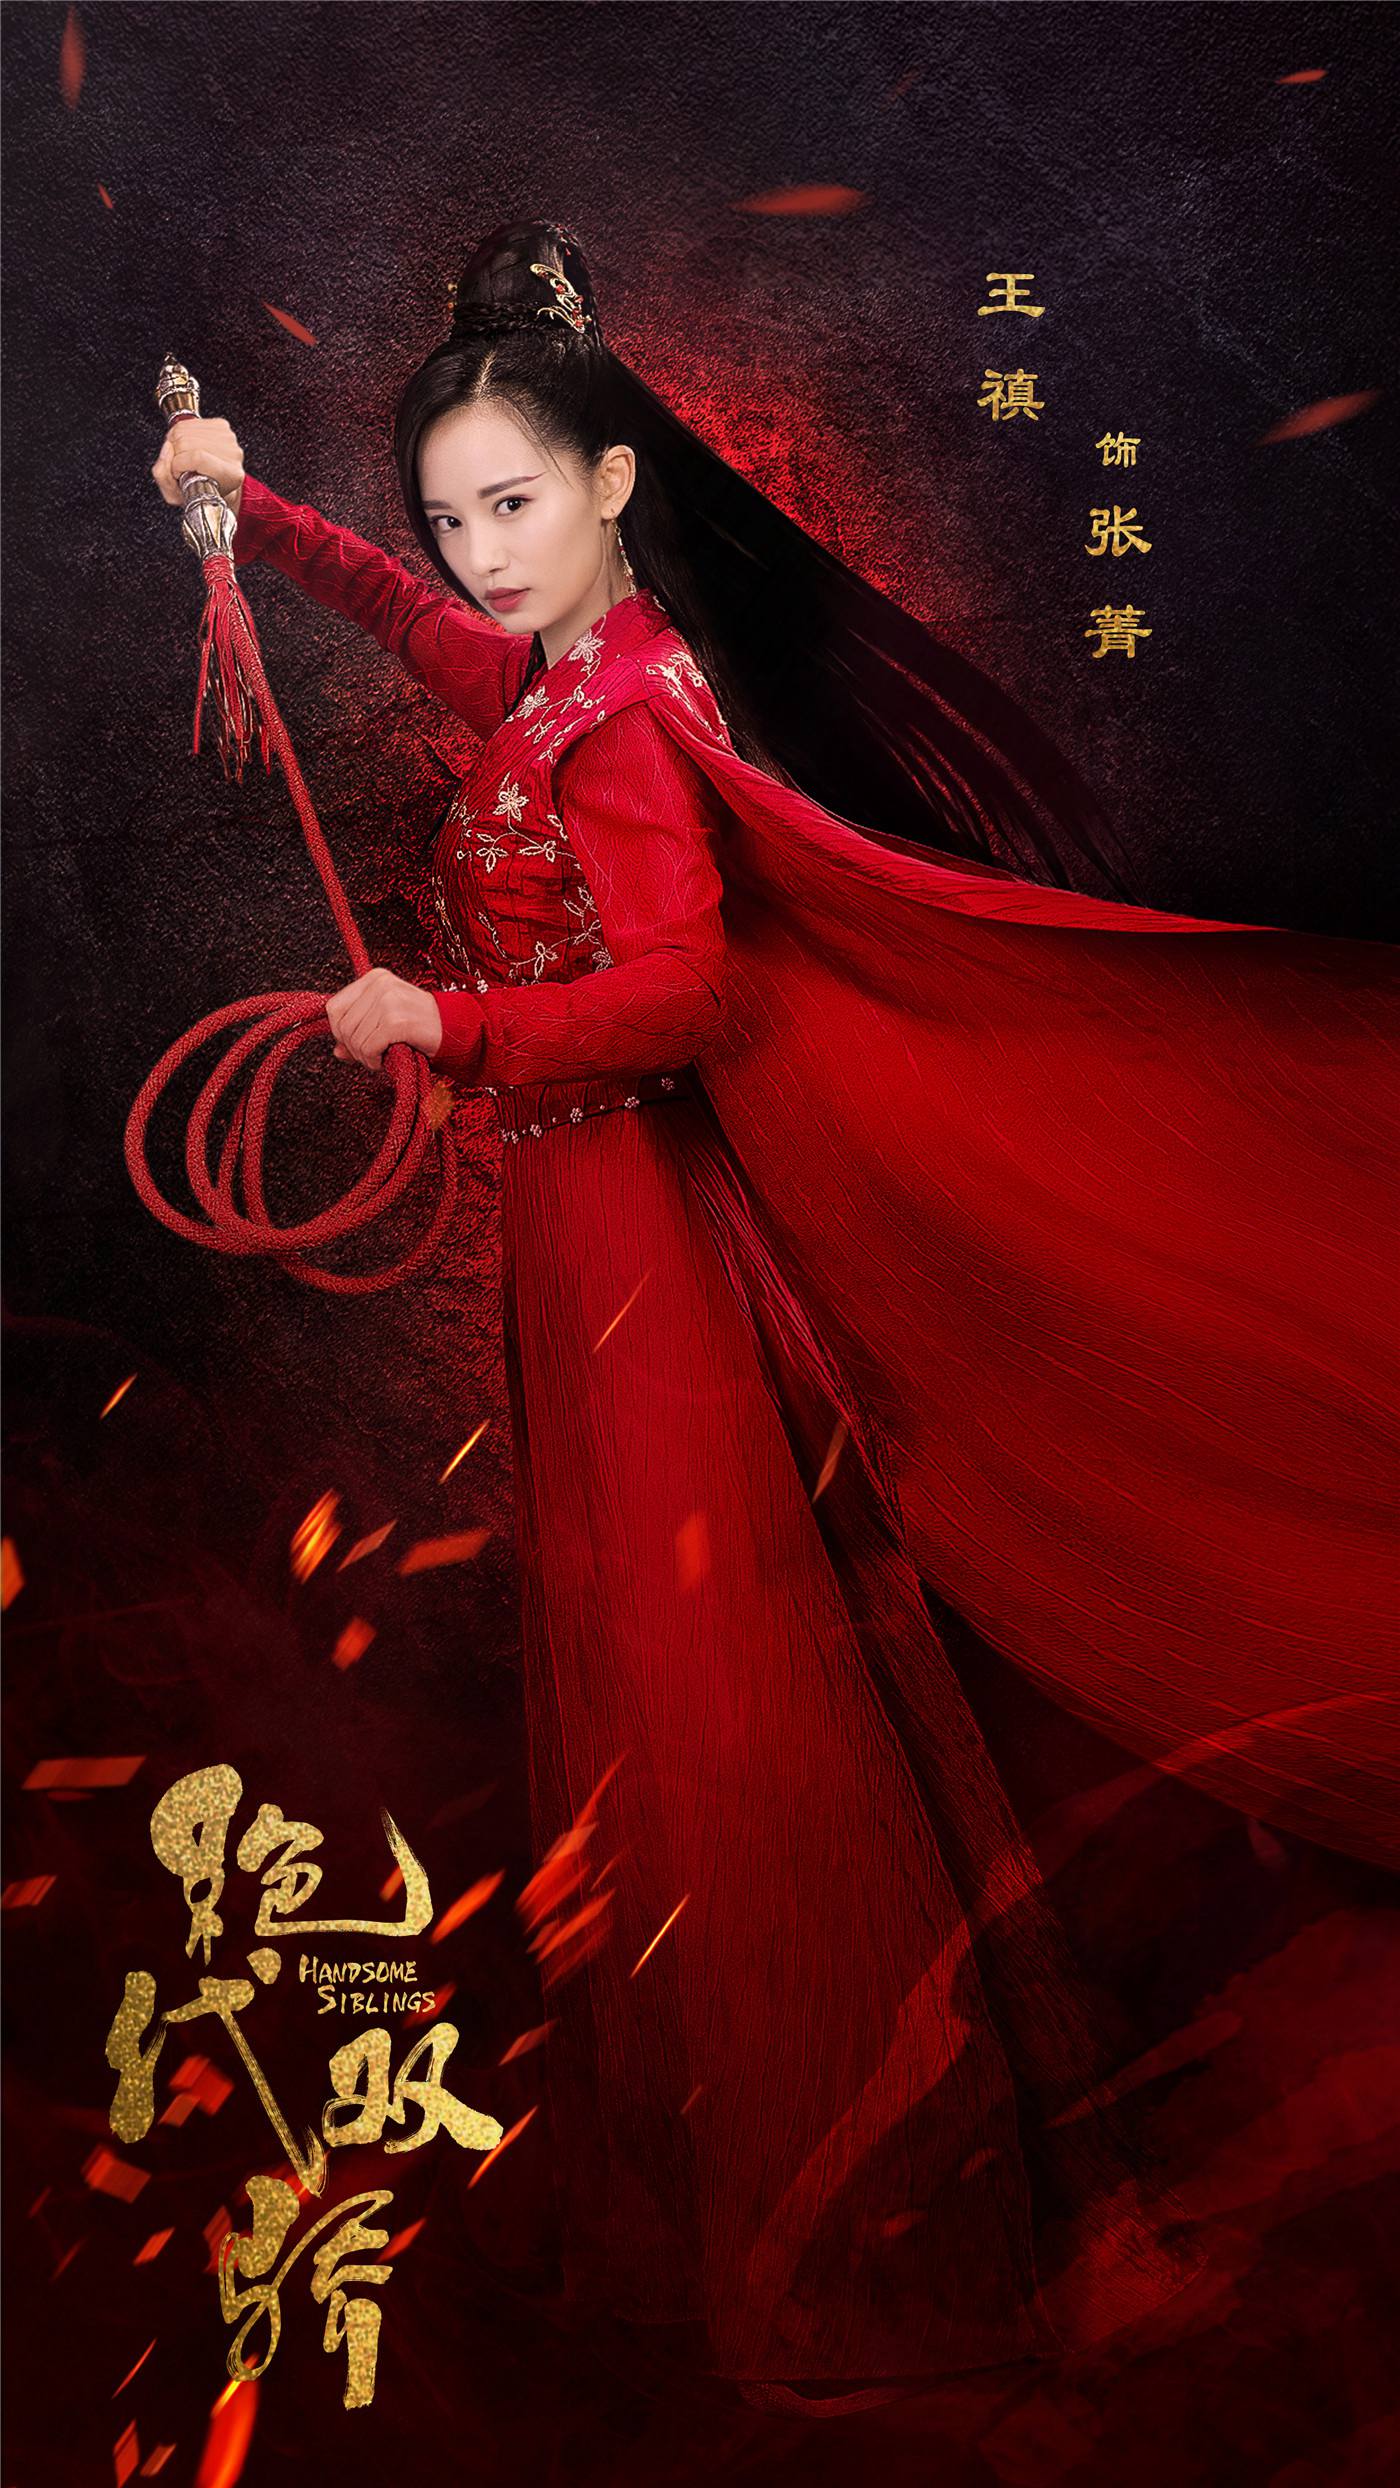 《绝代双骄》于正式杀青,剧中小仙女张菁的扮演者王禛也完成了